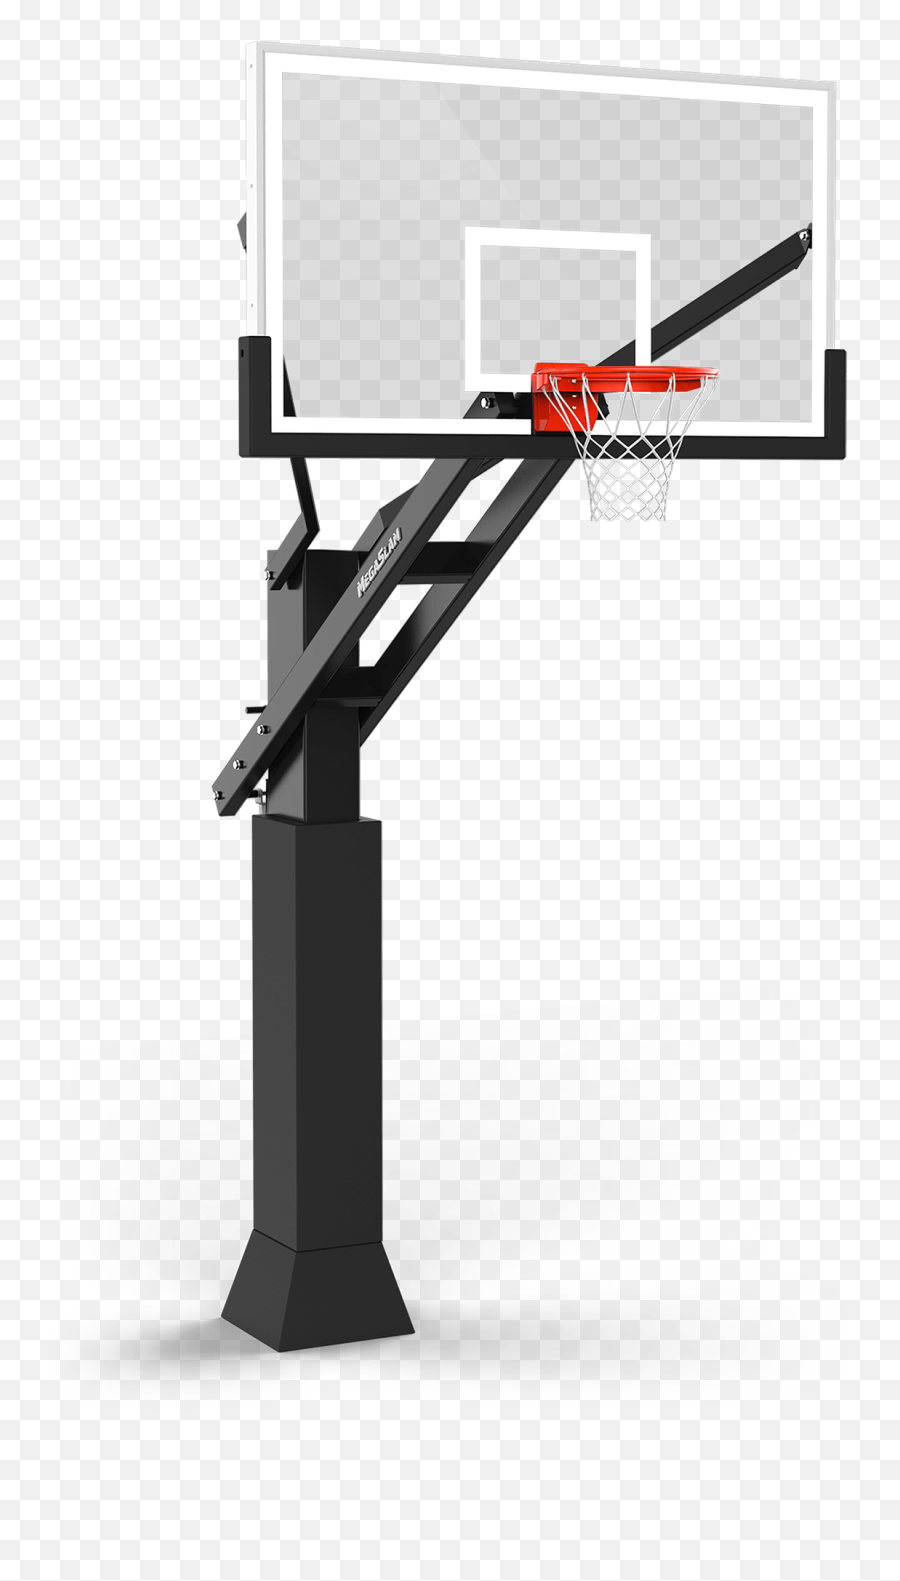 Outdoor Basketball Goal Mega Slam Hoops - Outdoor Basketball Goal Png,Basketball Hoop Png